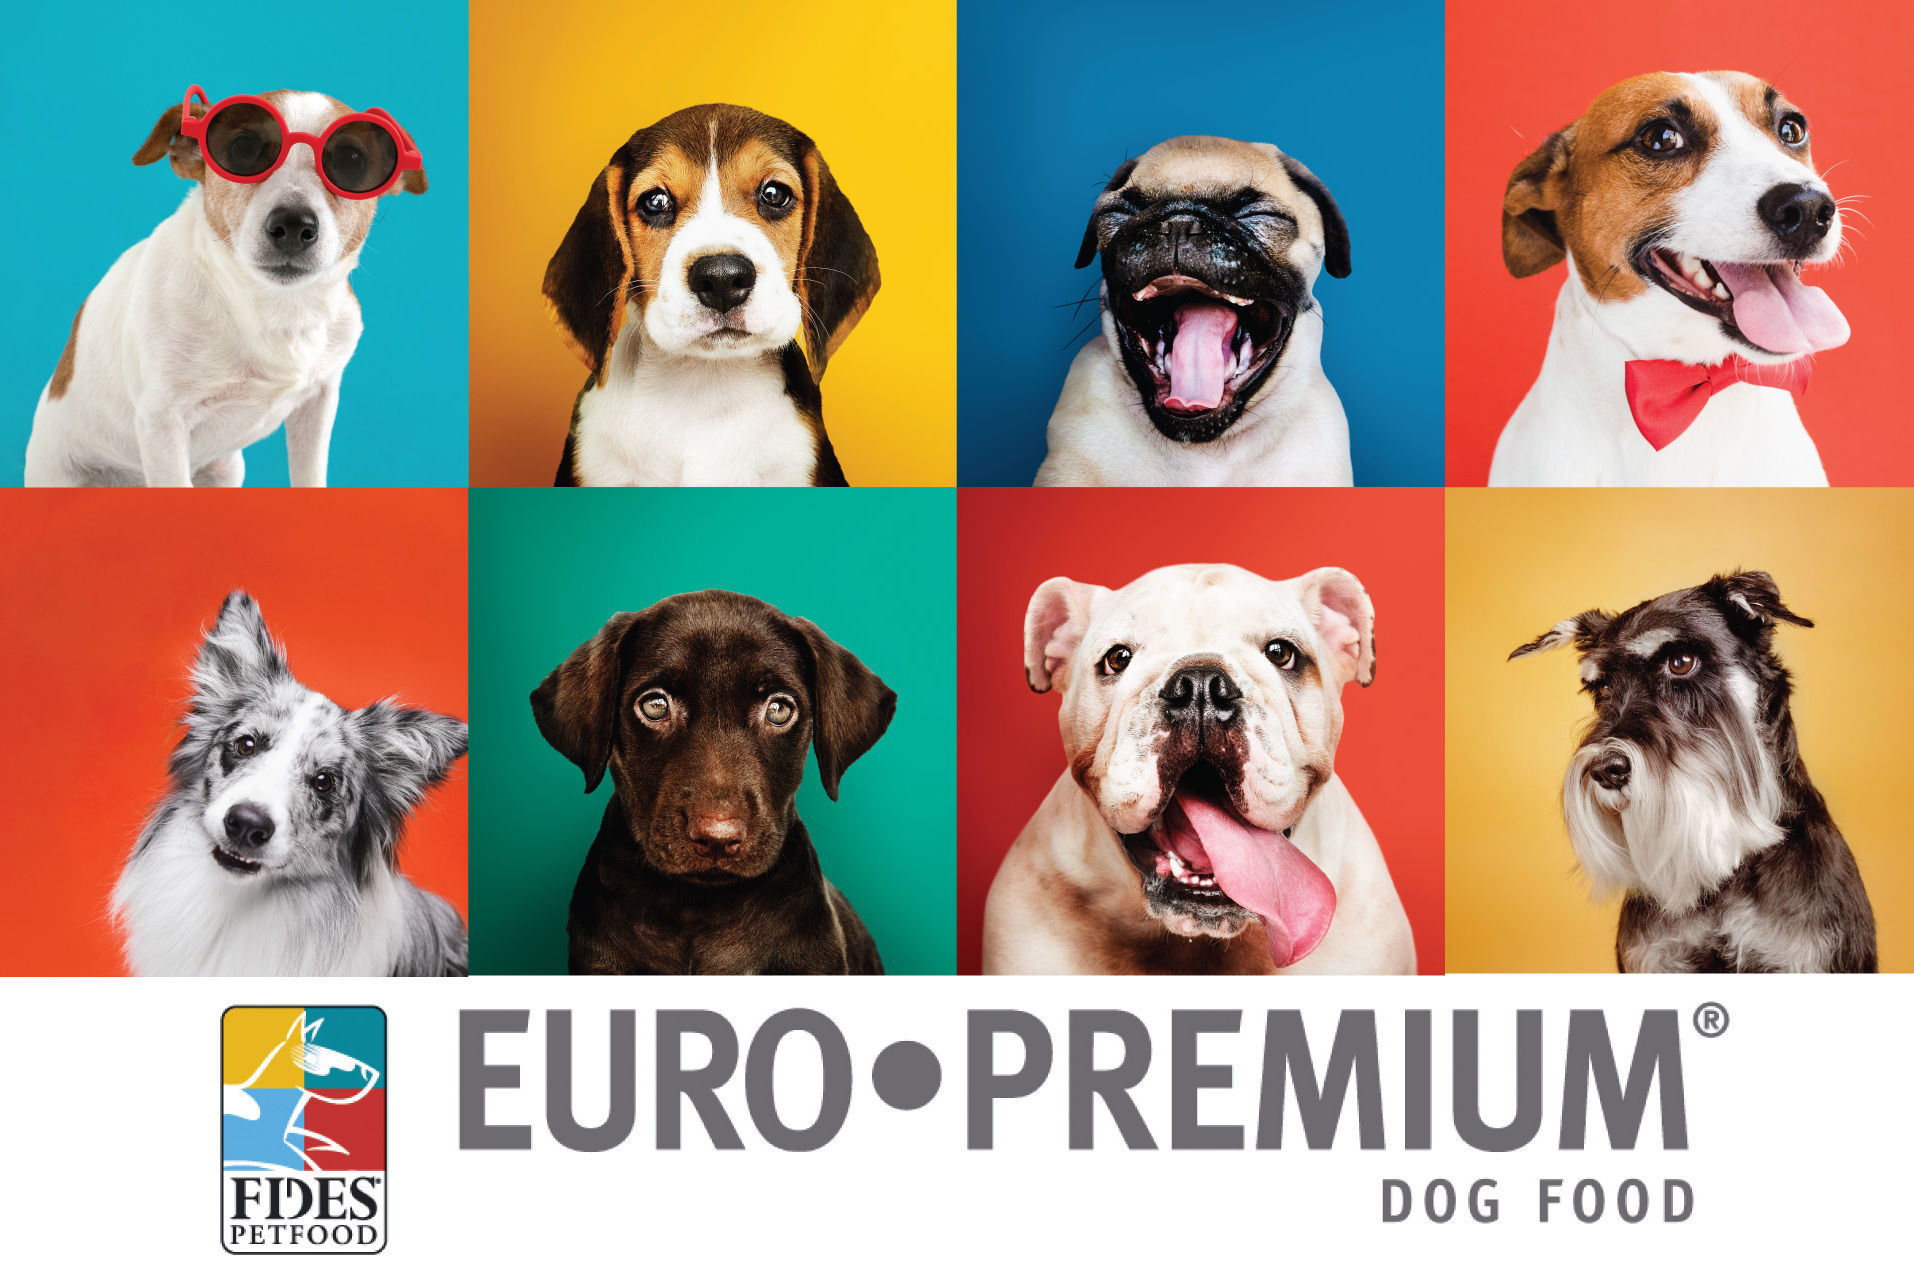 อาหารสุนัข ยูโรพรีเมี่ยม Euro Premium ผลิตที่ประเทศเบลเยี่ยม อาหารสุนัขพรีเมี่ยม ในราคาสบายกระเป๋า ไม่แพง  ครบคุณค่าโภชนาการที่สุนัขต้องการ 